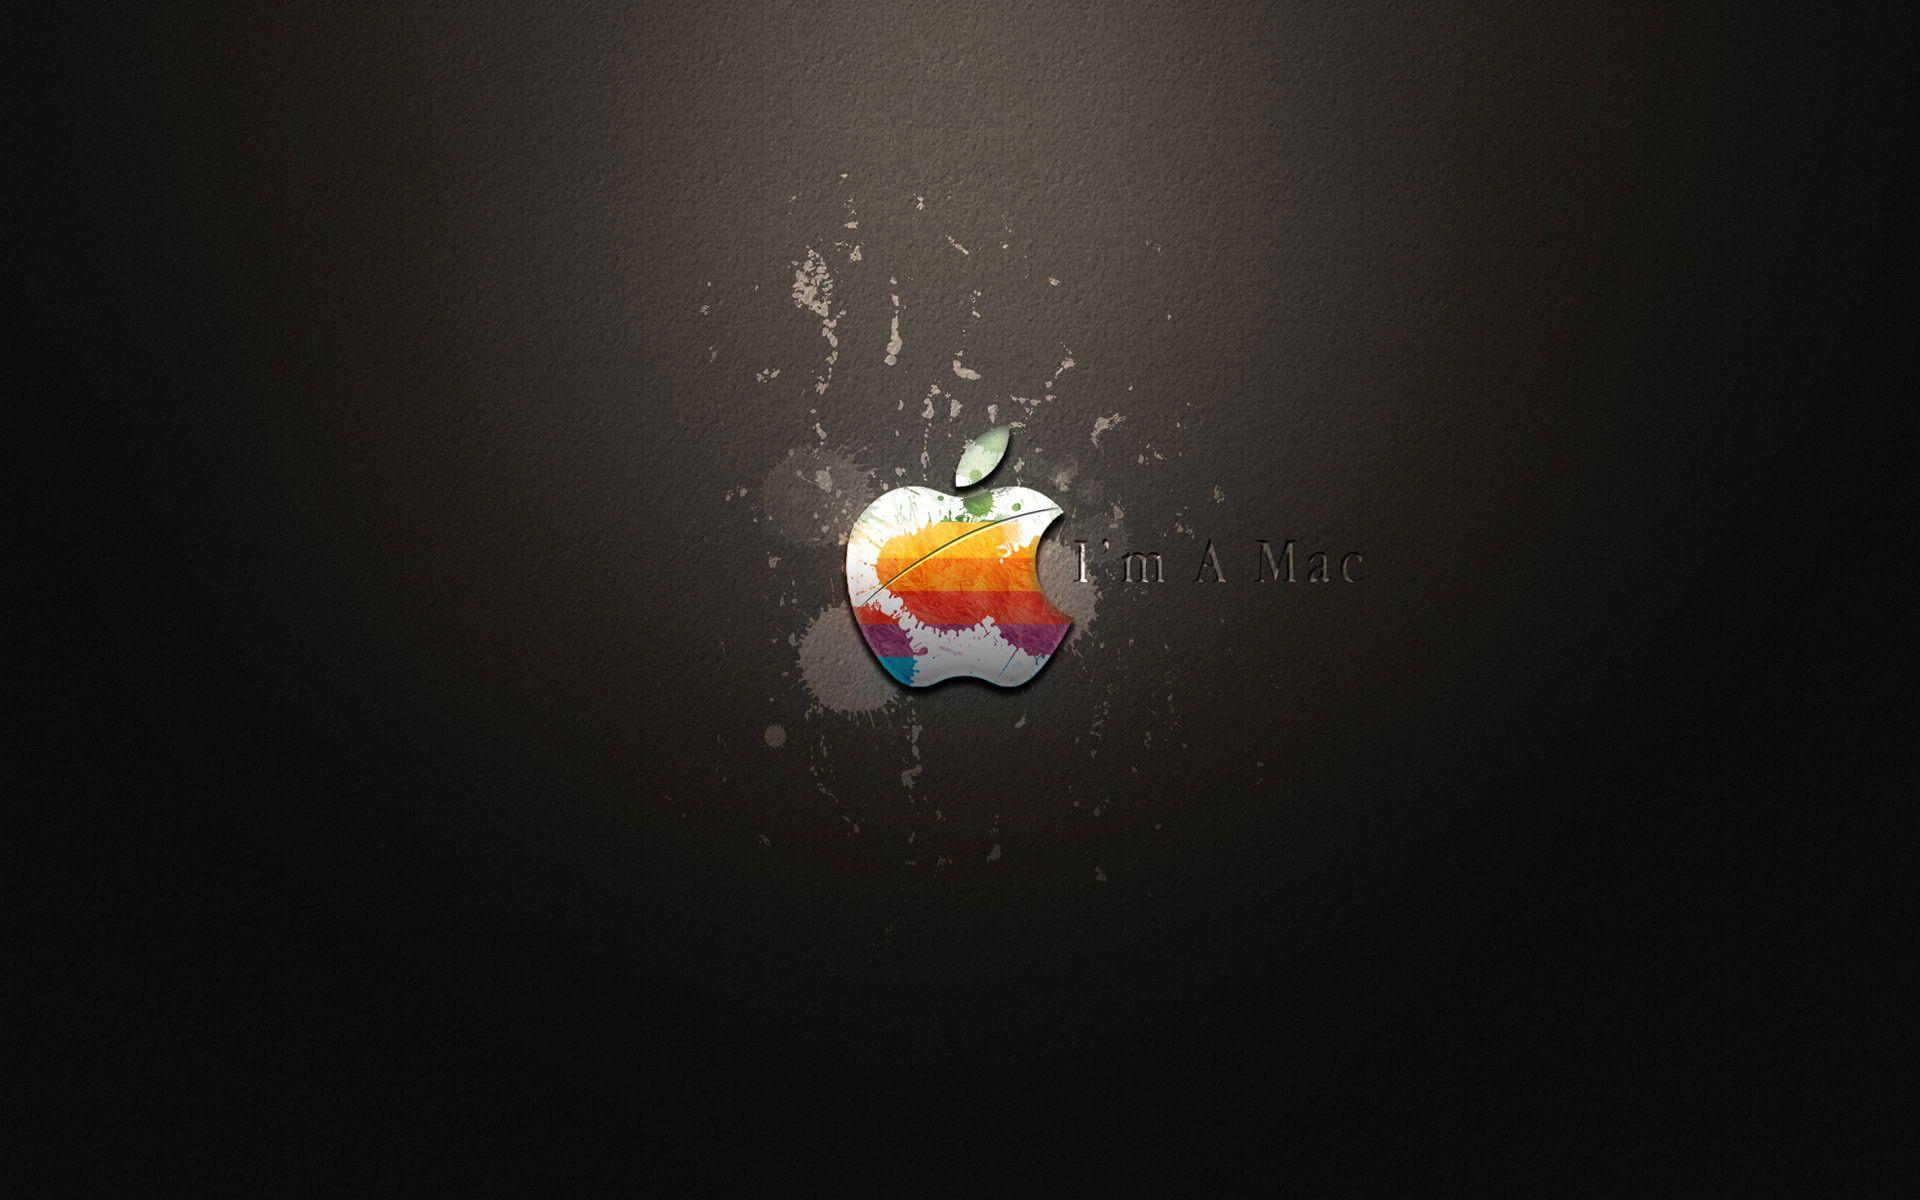 1920x1200 Hình nền nền Mac mát mẻ Hình nền Apple 1920x1200PX Hình nền vui nhộn mát mẻ.  Hình nền Apple, Hình nền Mac, Hình nền